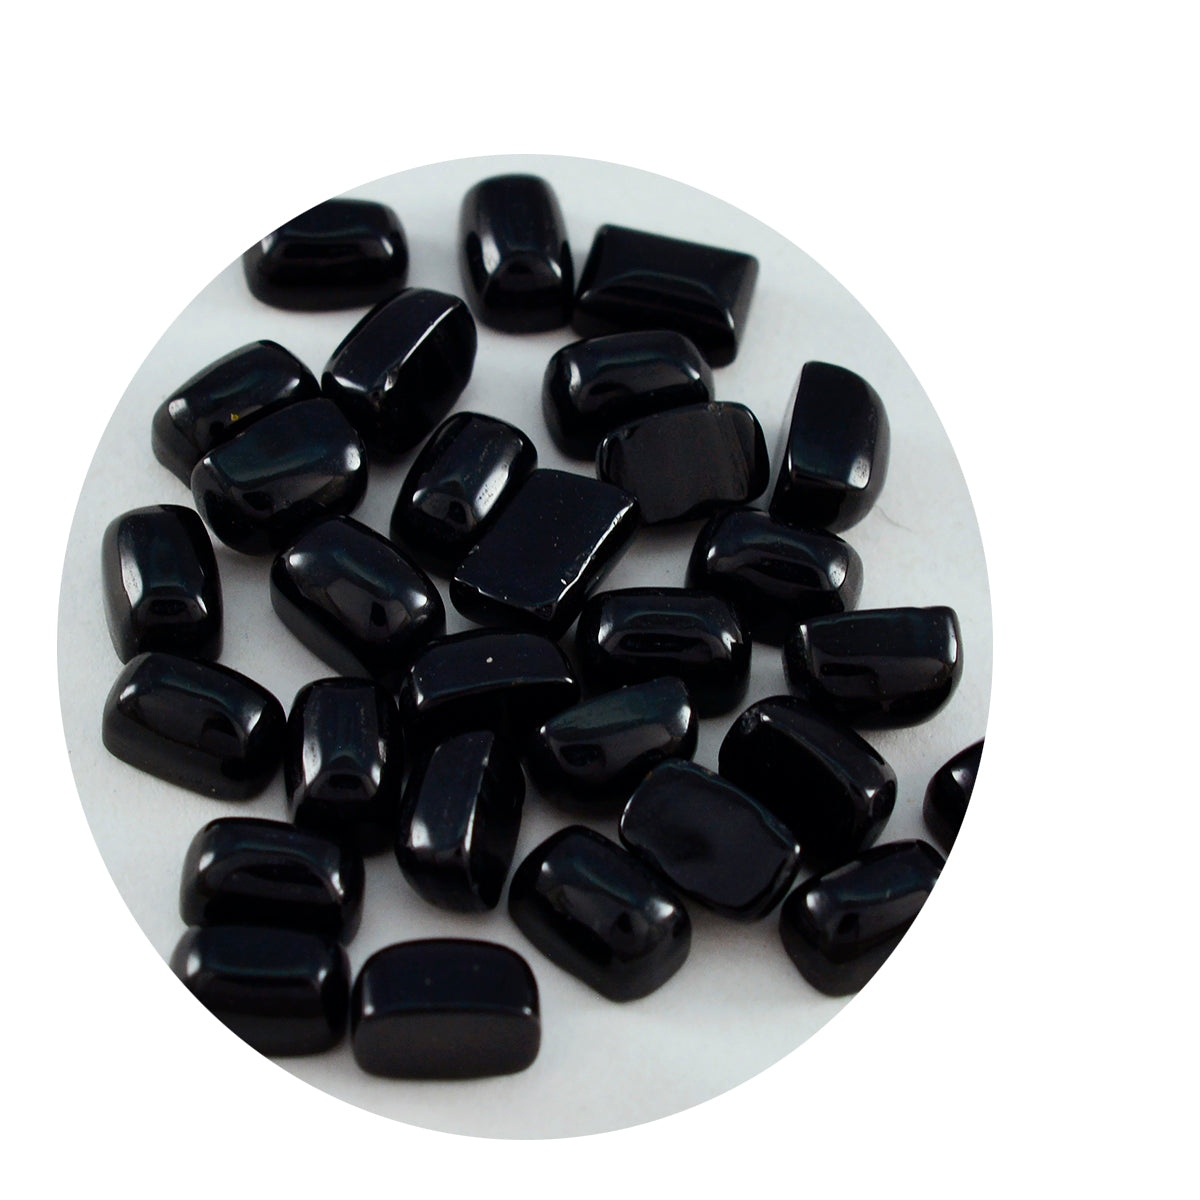 Riyogems 1 Stück schwarzer Onyx-Cabochon, 4 x 6 mm, achteckige Form, hübscher Qualitäts-Edelstein